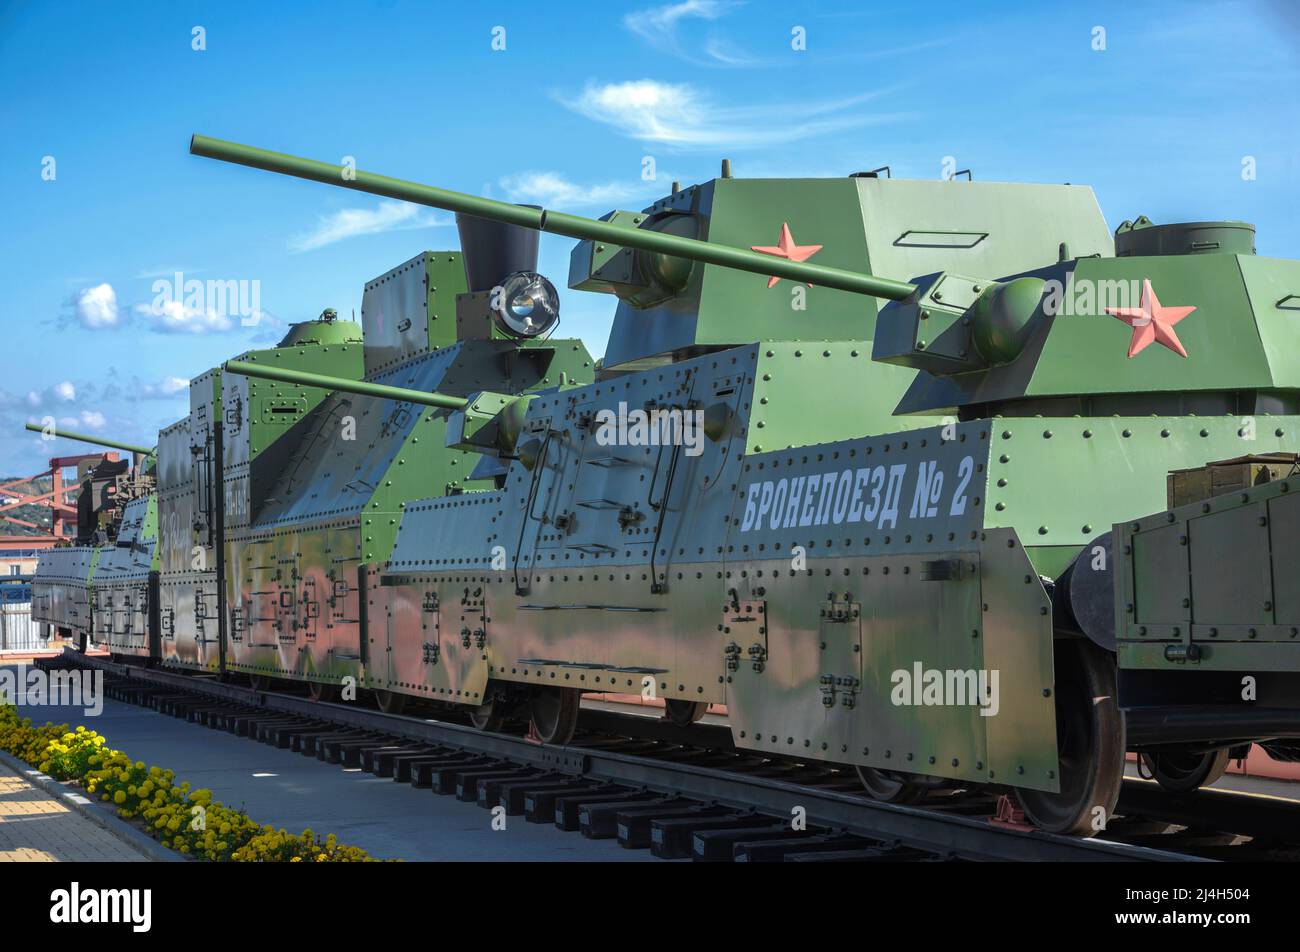 KAMENSK-SHAKHTINSKY, RUSSIE - 04 OCTOBRE 2021 : une copie exacte du train blindé de la Grande Guerre patriotique, Parc Patriot. Kamensk-Shakhtinsky, Russ Banque D'Images